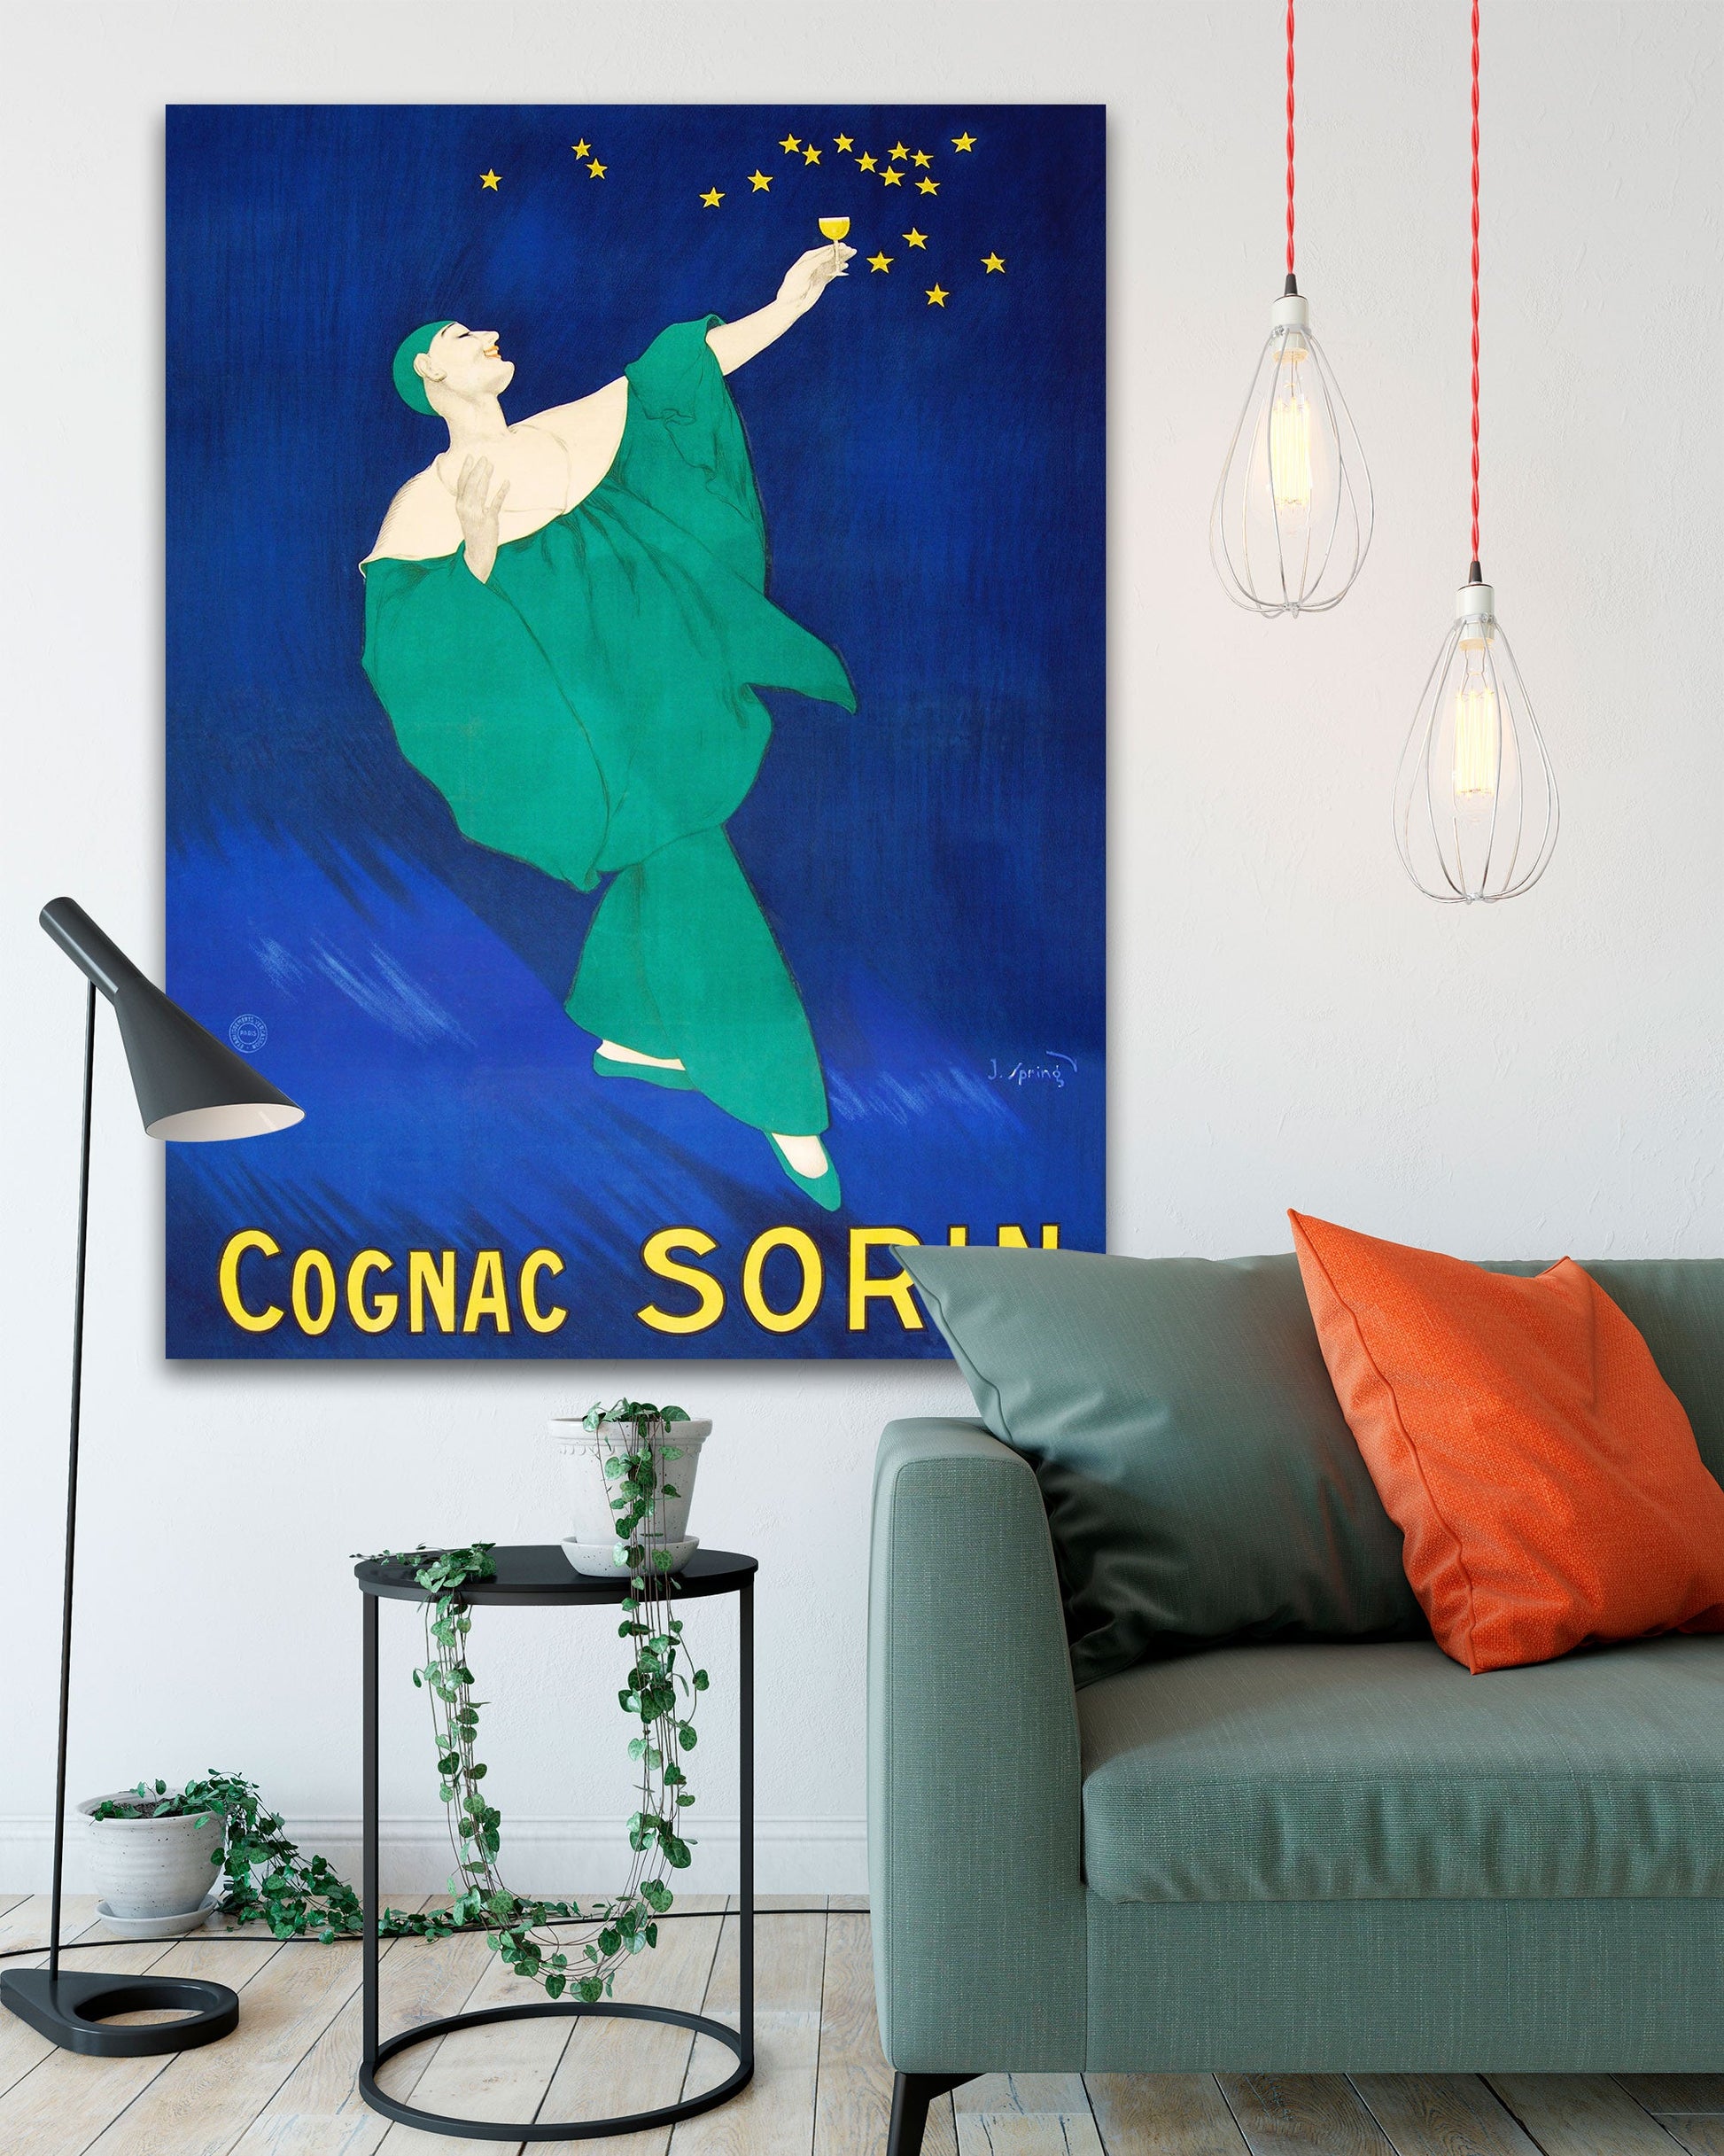 Vintage Cognac Sorin Poster Art on Oversized Canvas - Transit Design